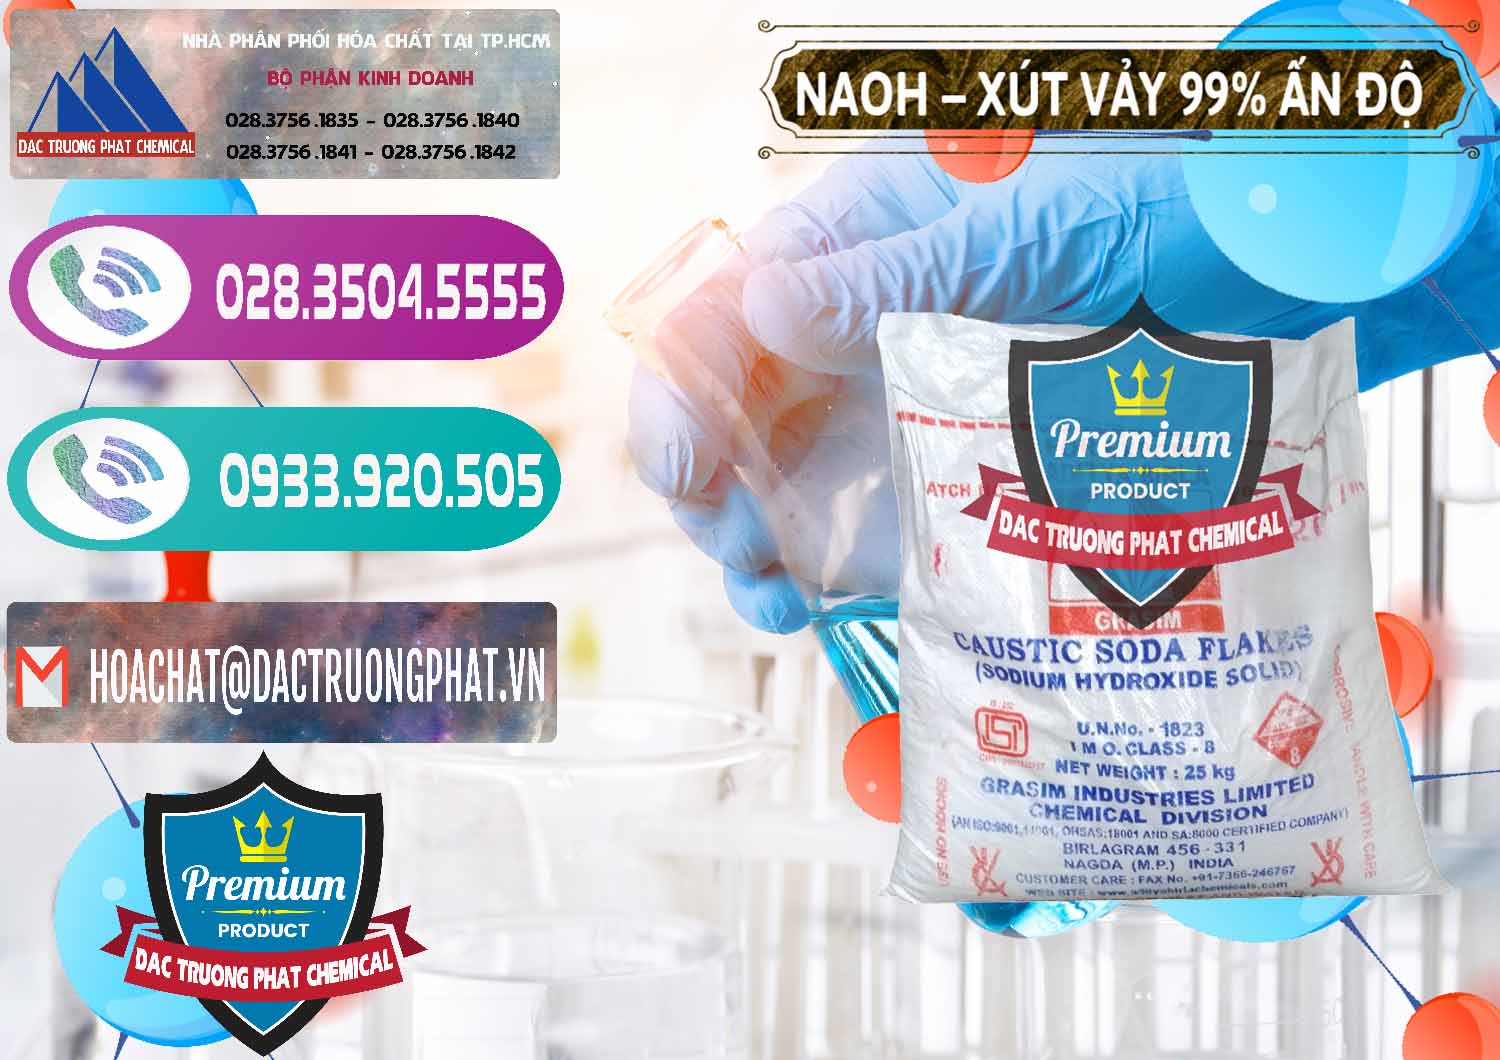 Đơn vị chuyên bán & cung ứng Xút Vảy - NaOH Vảy 99% Aditya Birla Grasim Ấn Độ India - 0171 - Nơi cung cấp _ phân phối hóa chất tại TP.HCM - hoachatxulynuoc.com